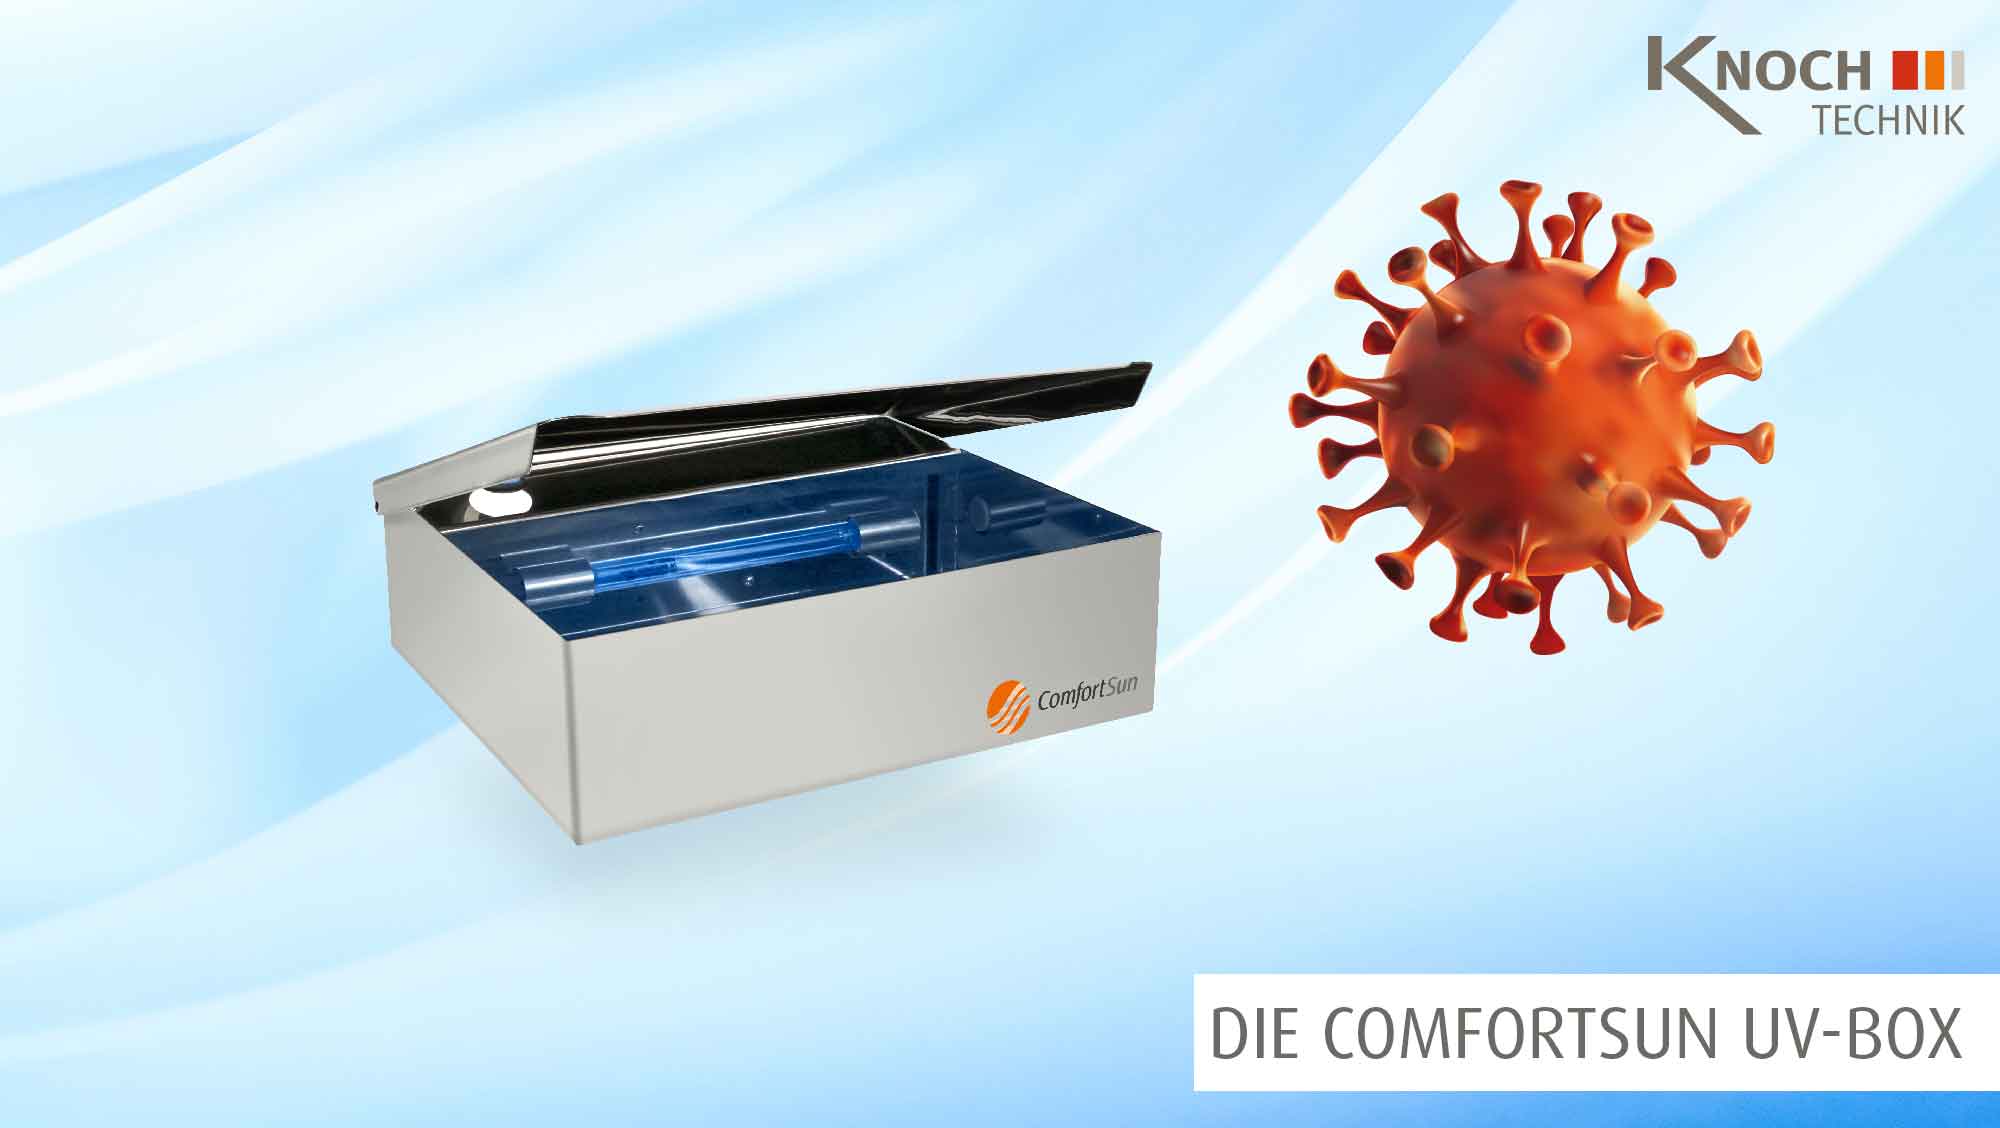 Die ComfortSun UV-Desinfektionsbox tötet Viren, Bakterien und Keime